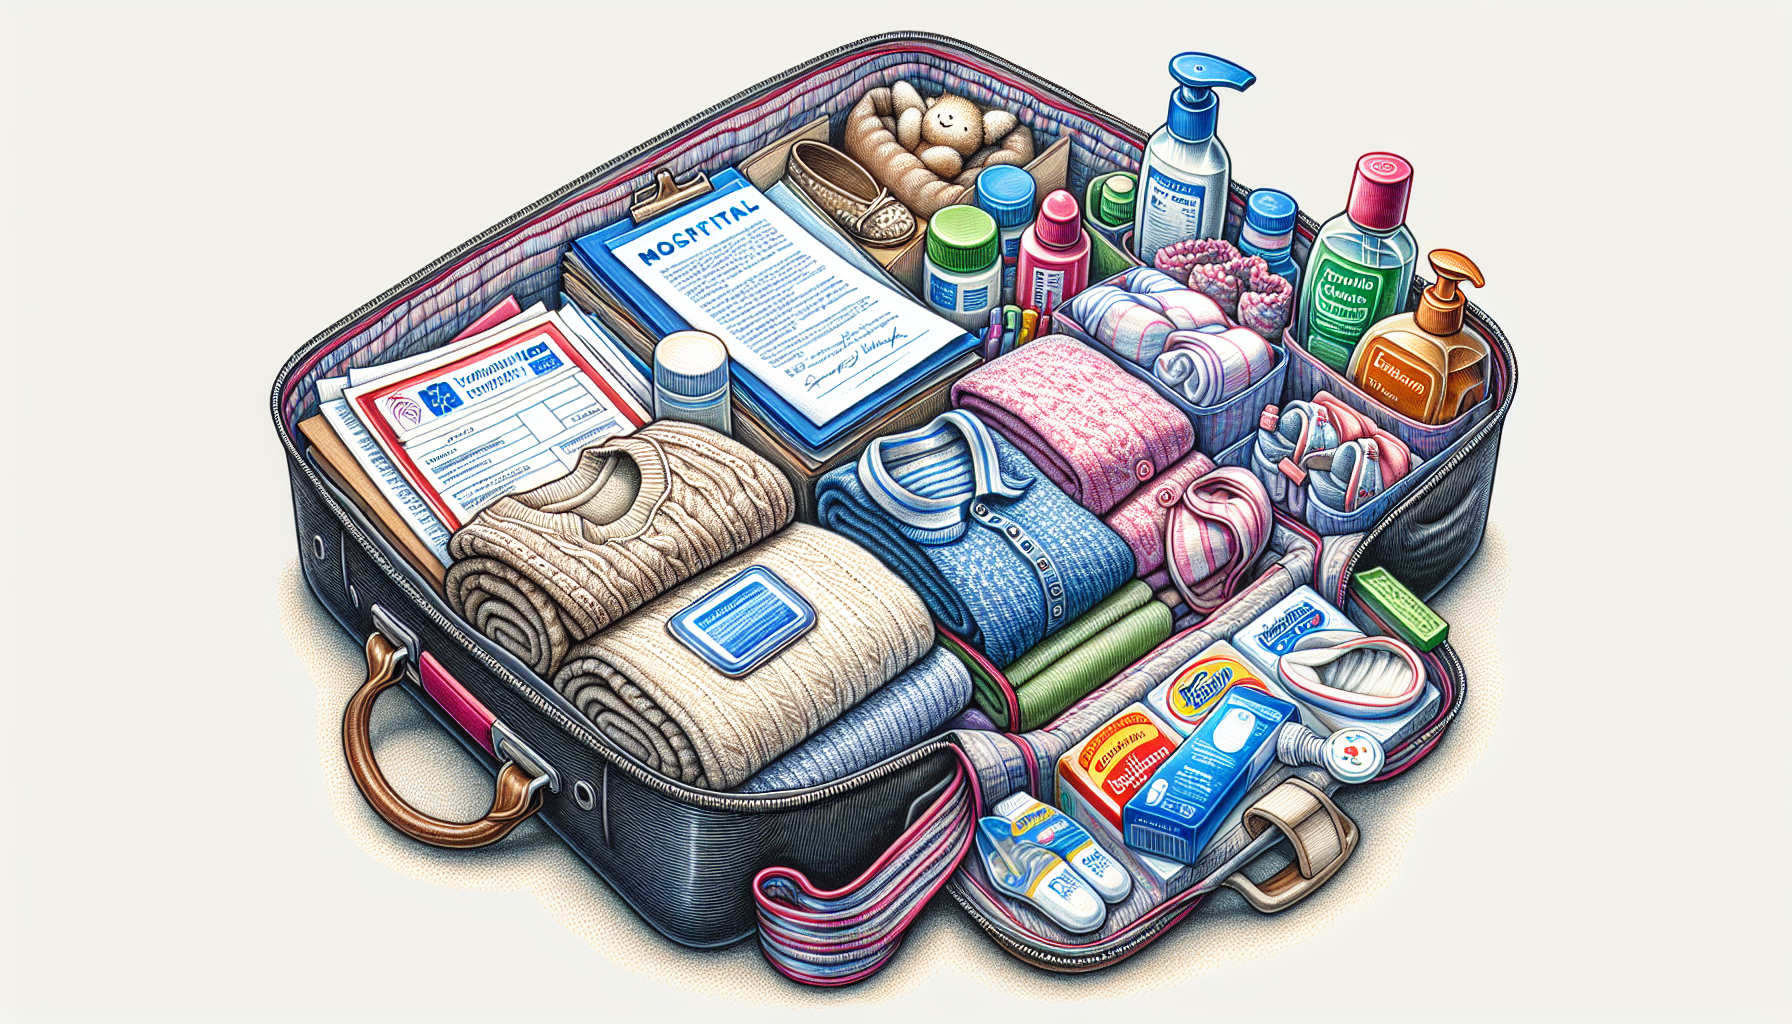 Packen der Kliniktasche - wichtige Dokumente, bequeme Kleidung, Hygieneartikel und Babyausstattung